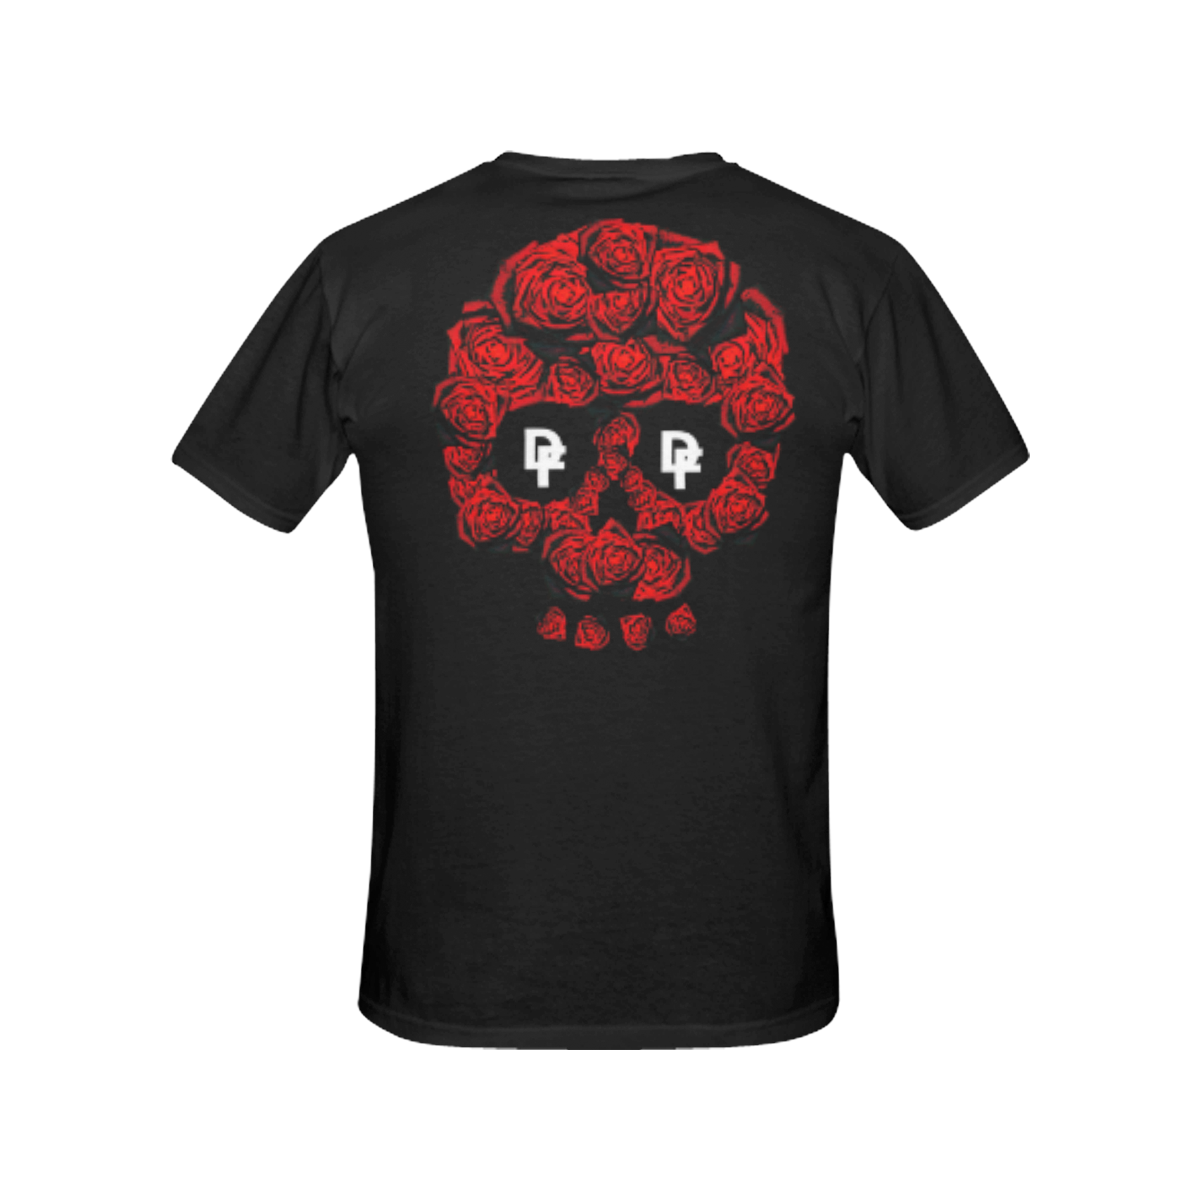 DF Rose Skull All Over Print T-Shirt for Women (USA Size) (Model T40)